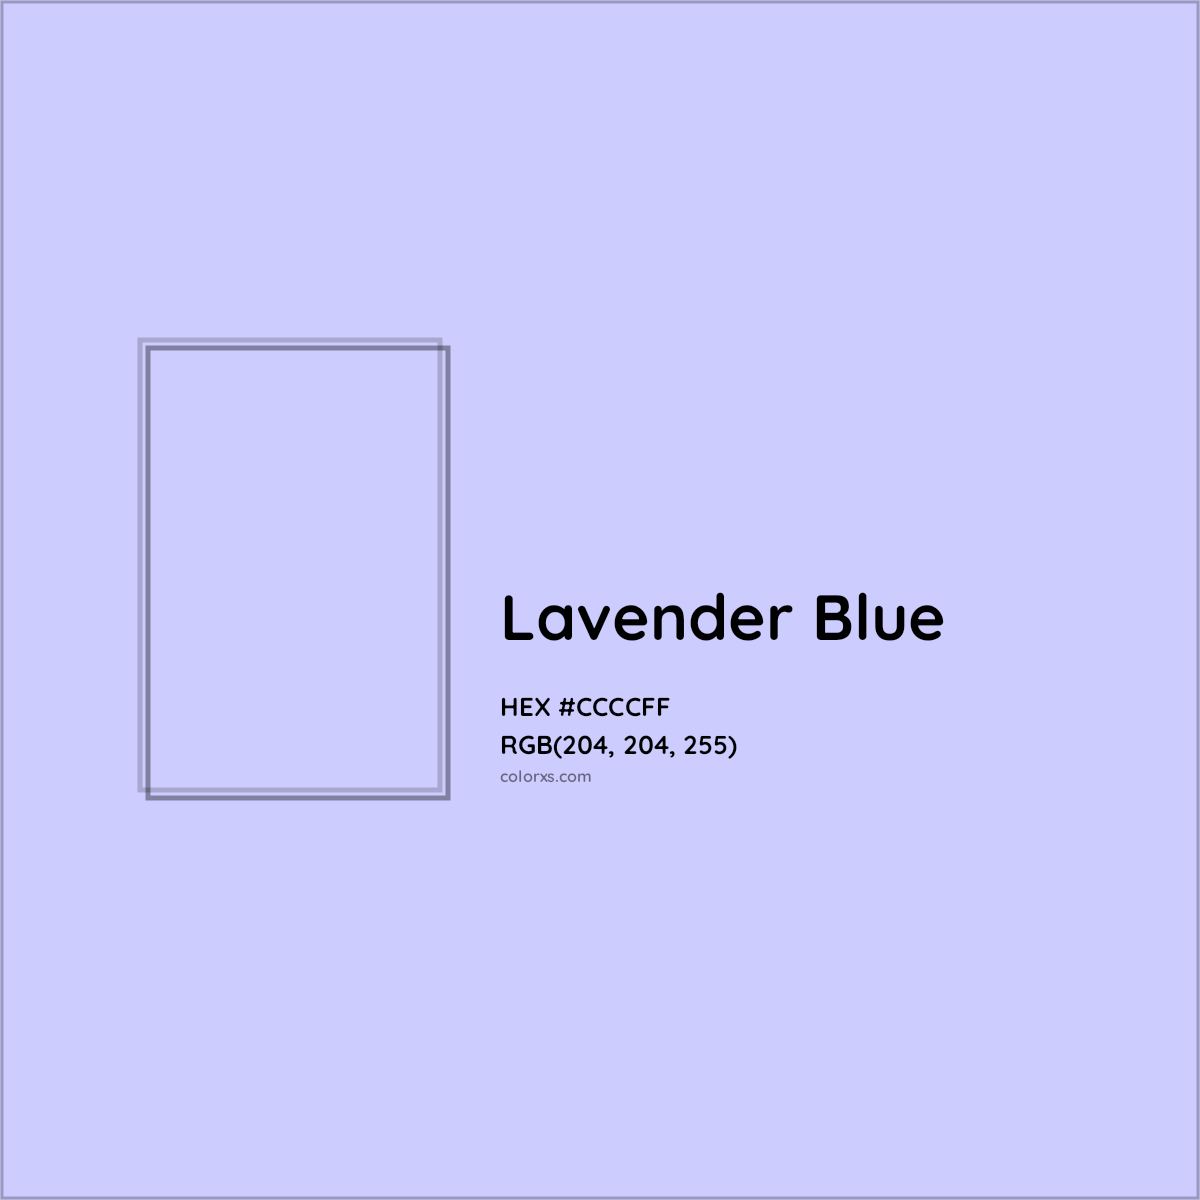 HEX #CCCCFF Lavender Blue Color - Color Code